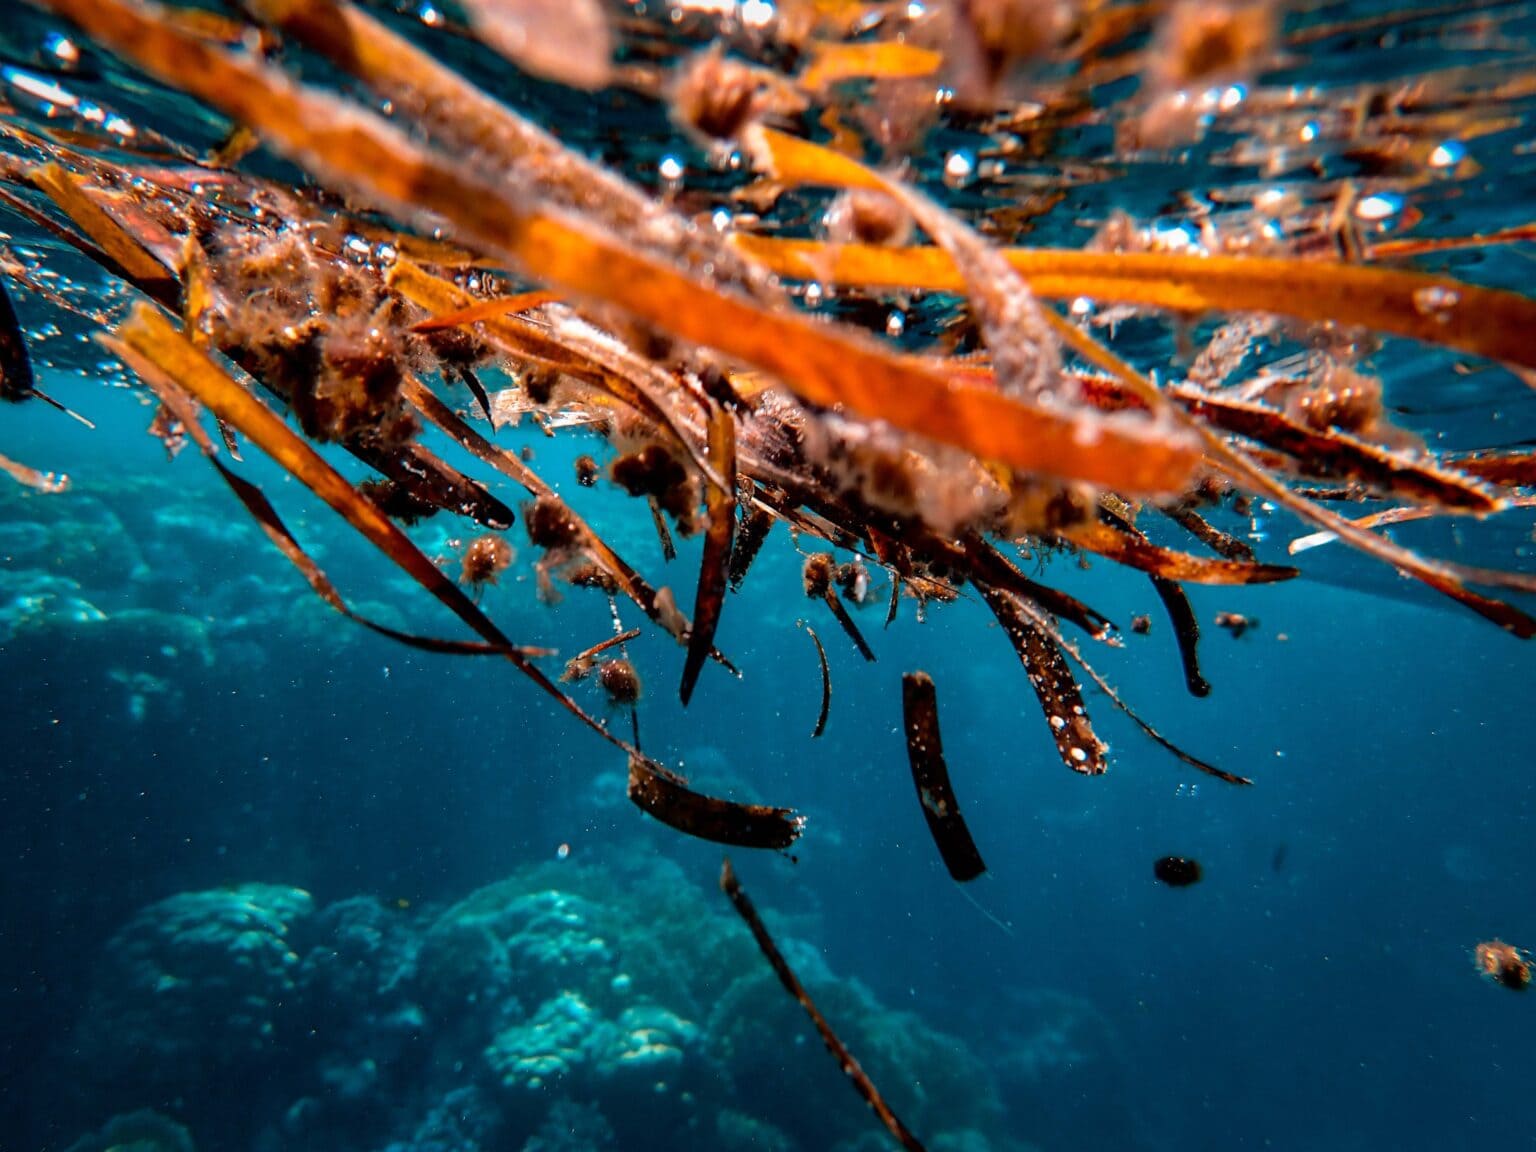 Francesco Ungaro seaweed in the ocean